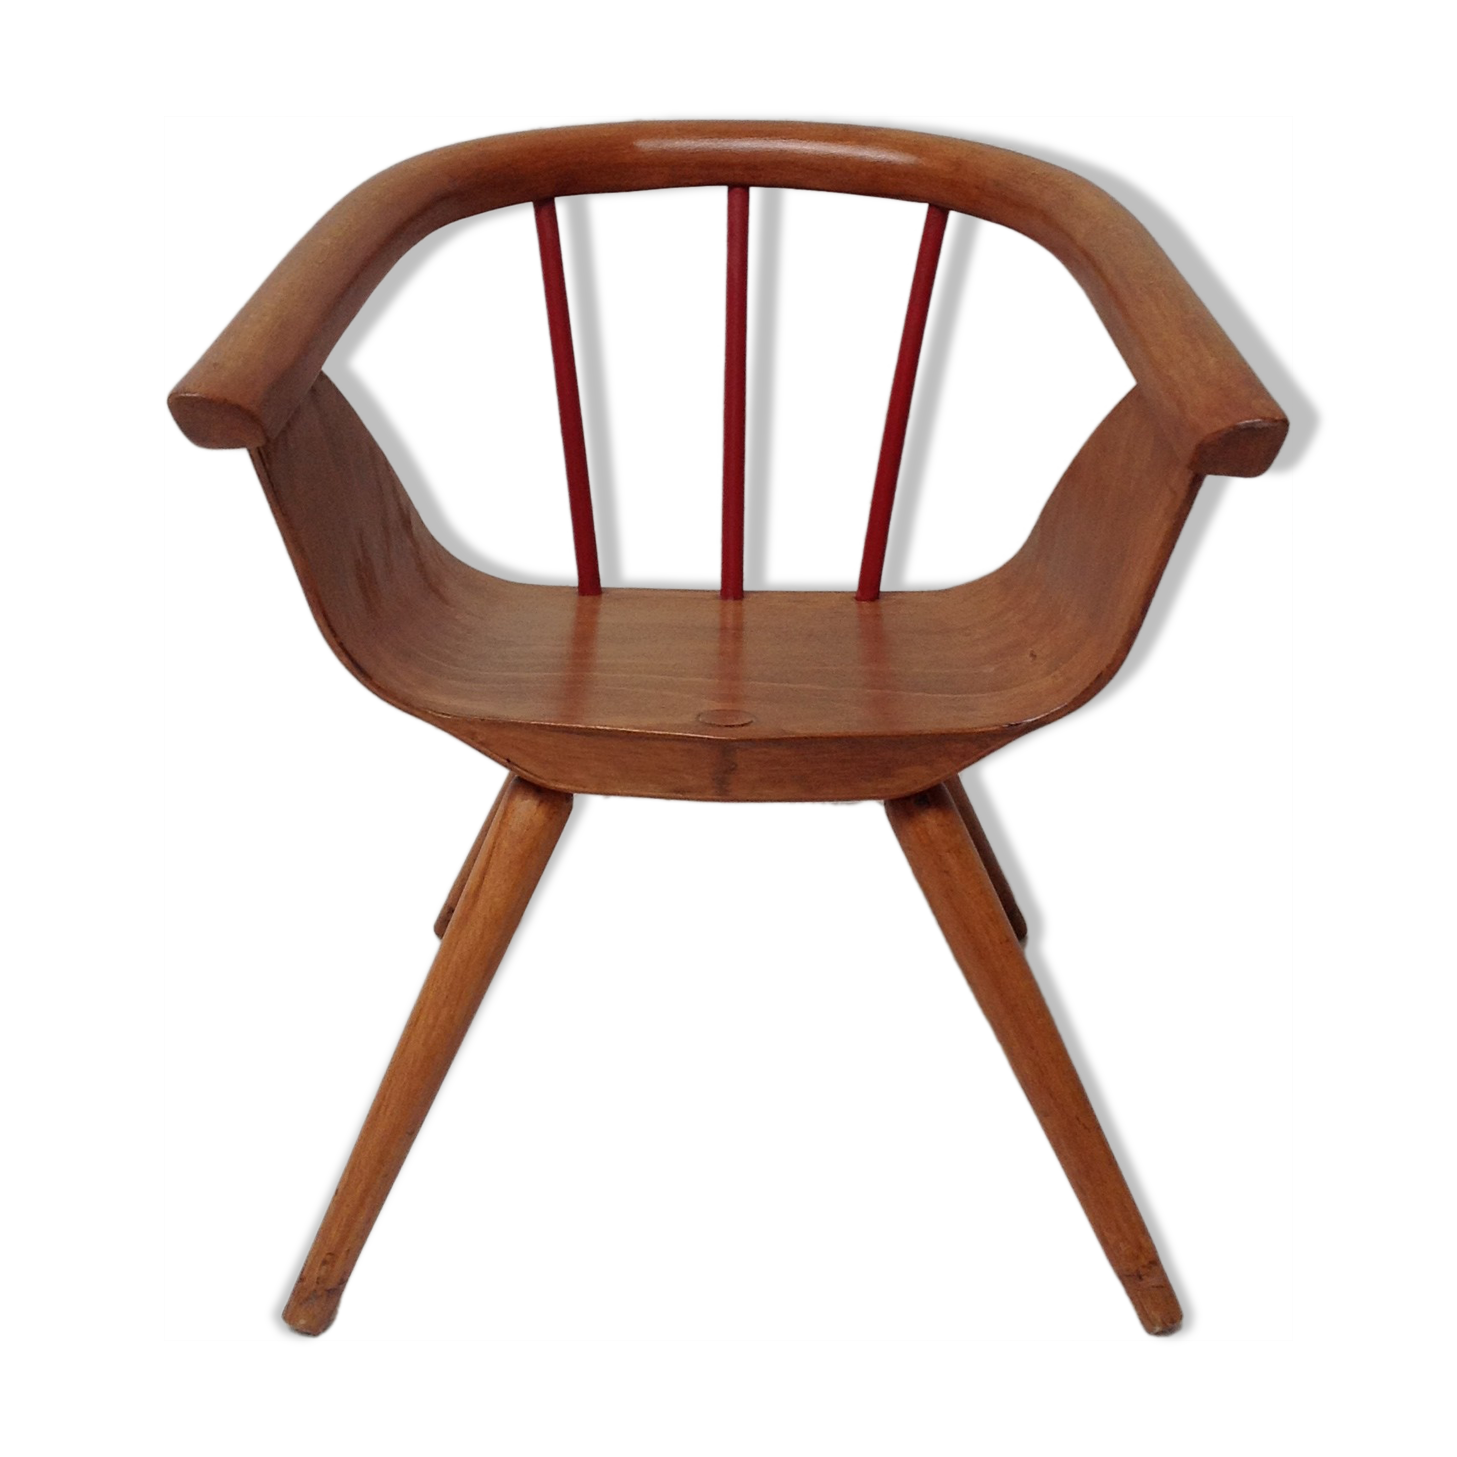 Fauteuil chaise bois courbé enfant Baumann vintage 50 60 style art deco 